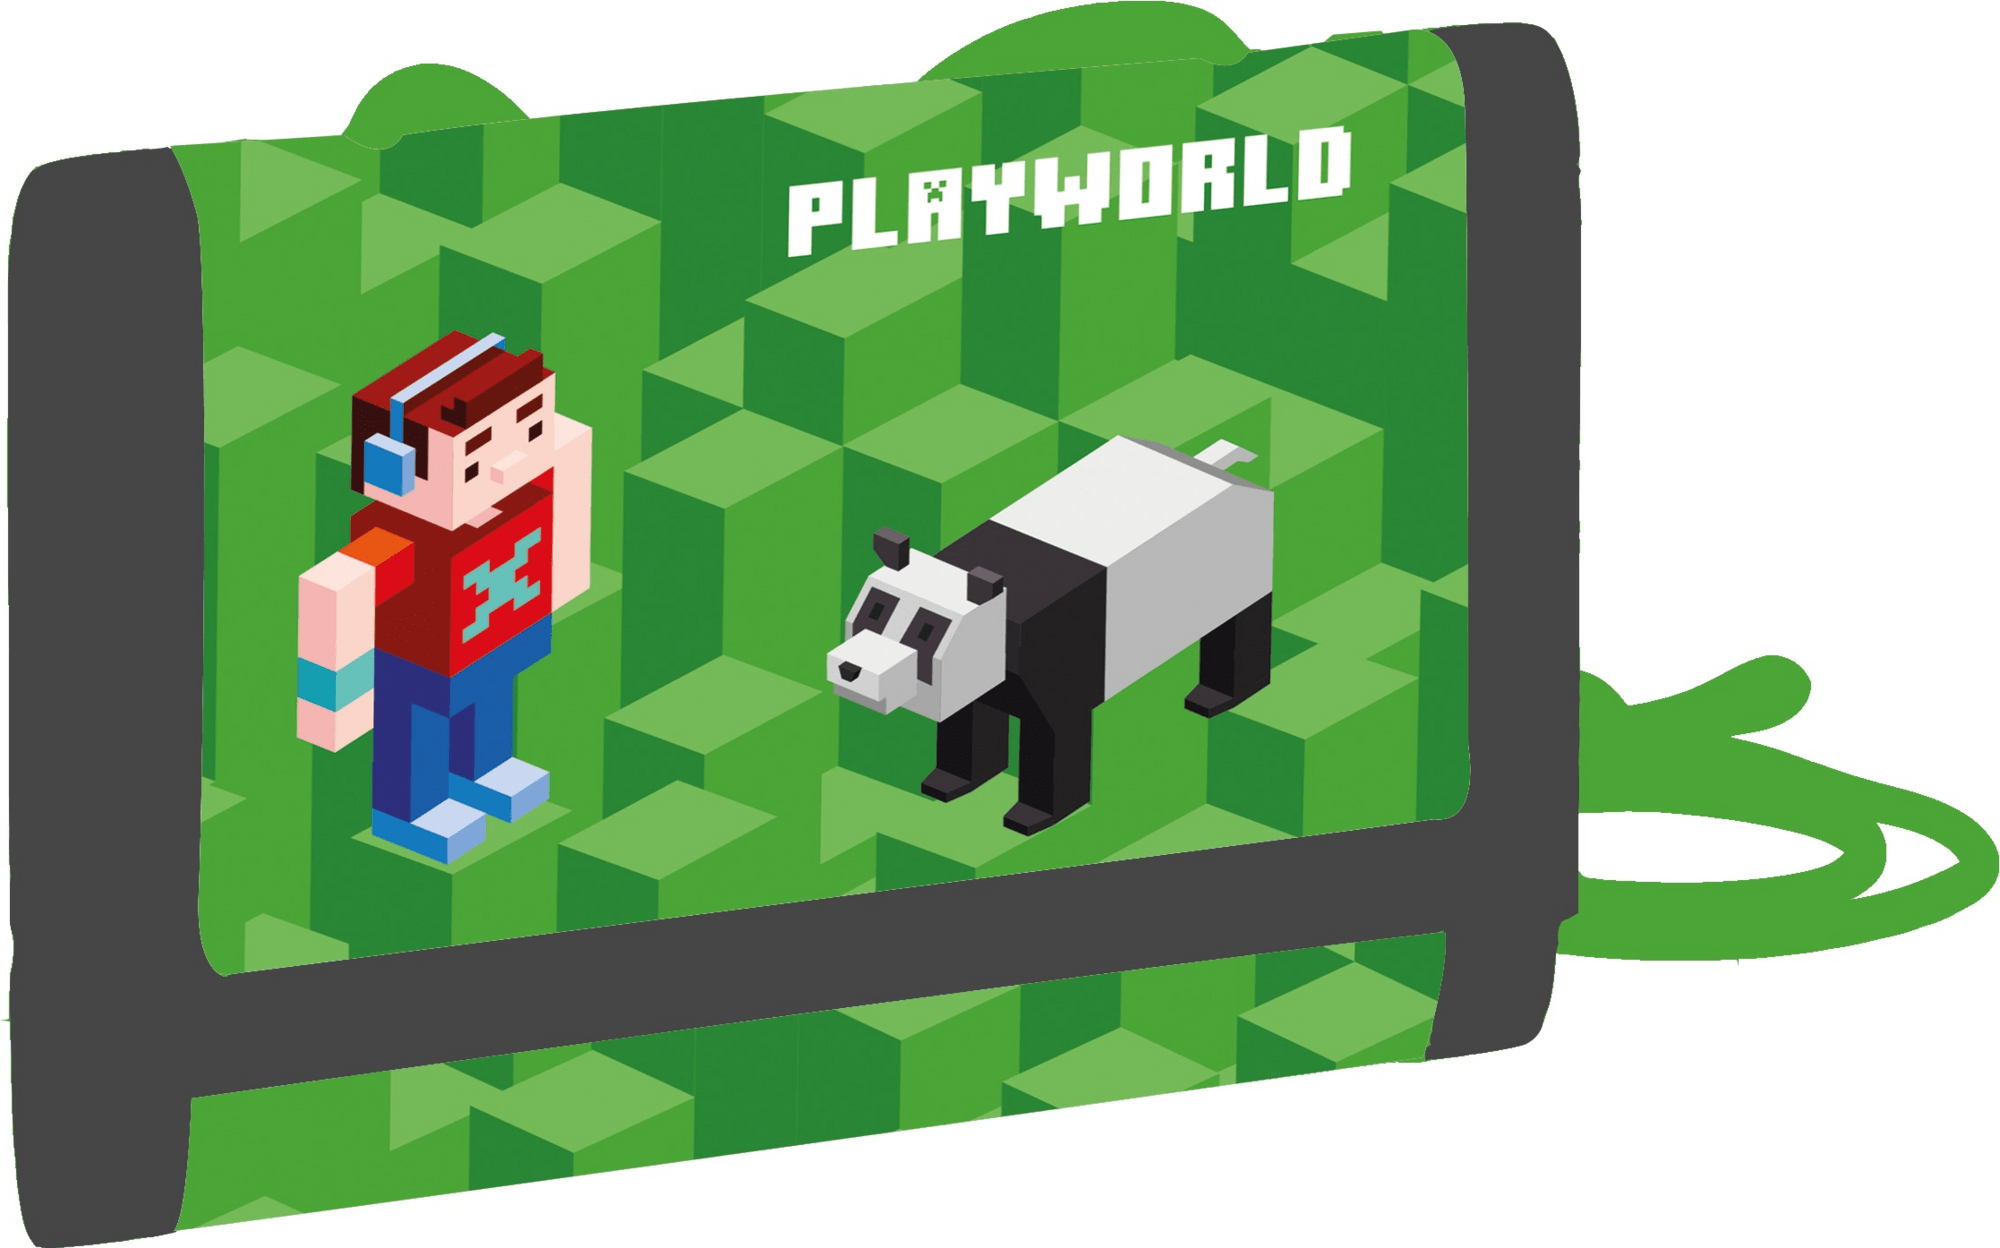 Dětská textilní peněženka Playworld